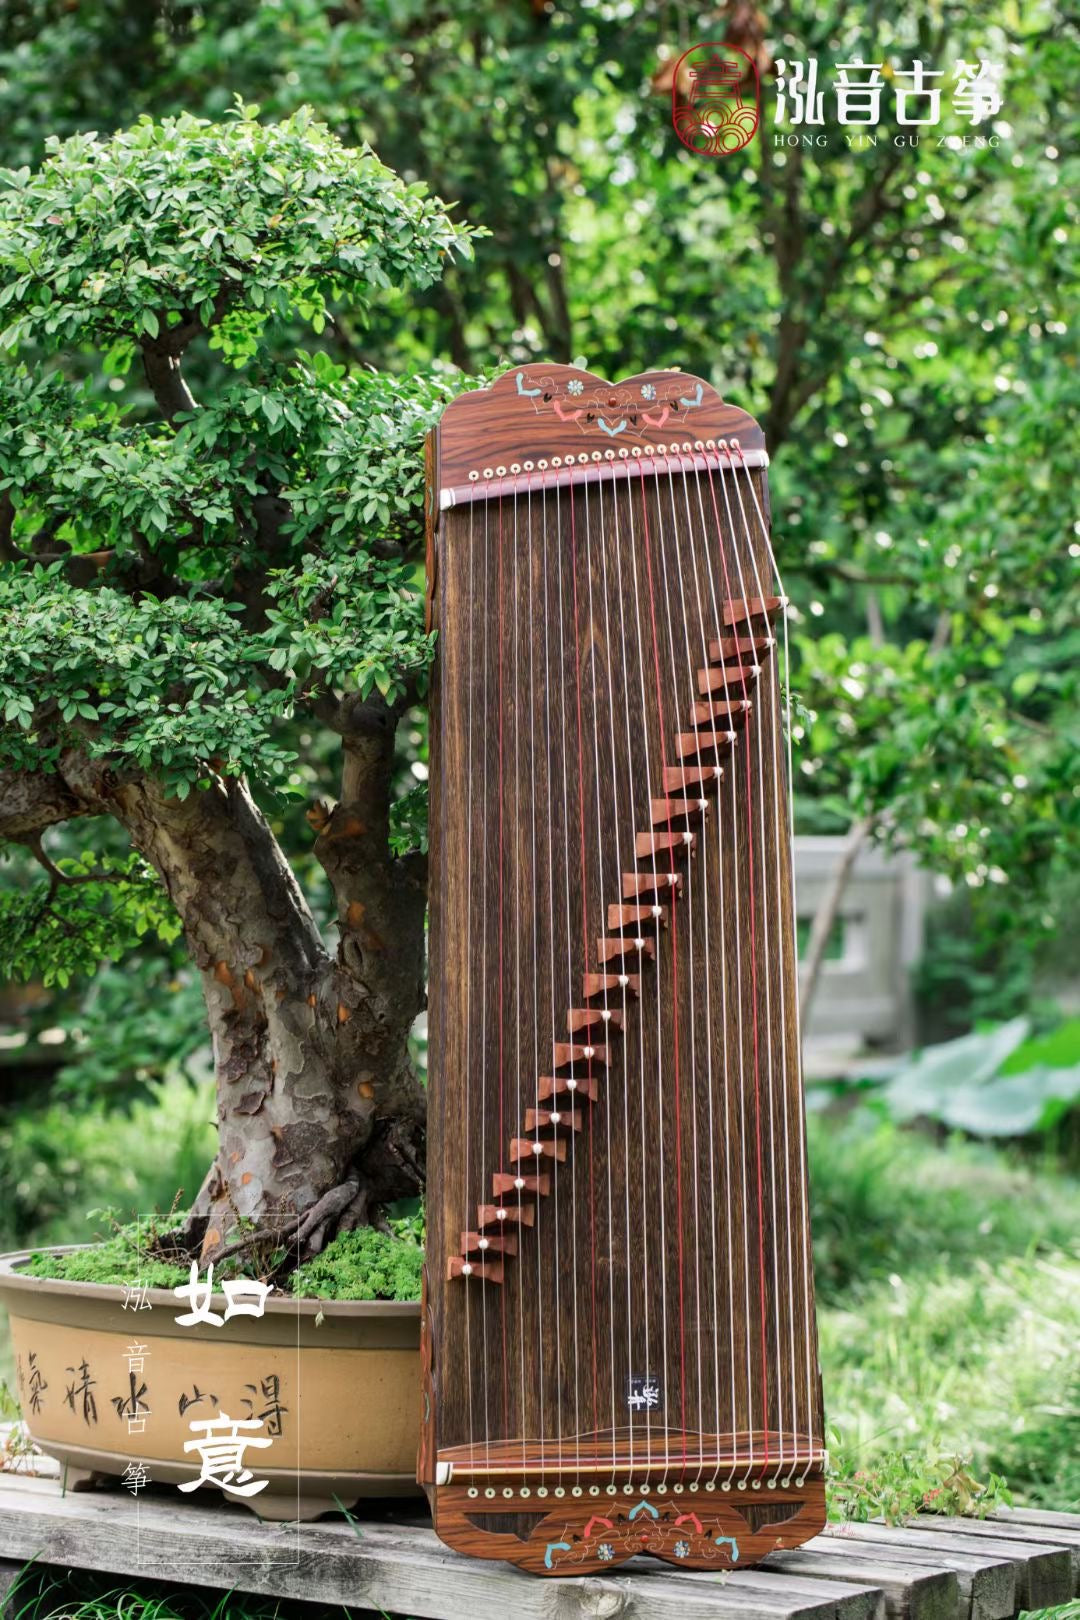 Hongyin 39in Ebony Guzheng “Ru Yi” at Guzheng World 古筝世界｜ 泓 